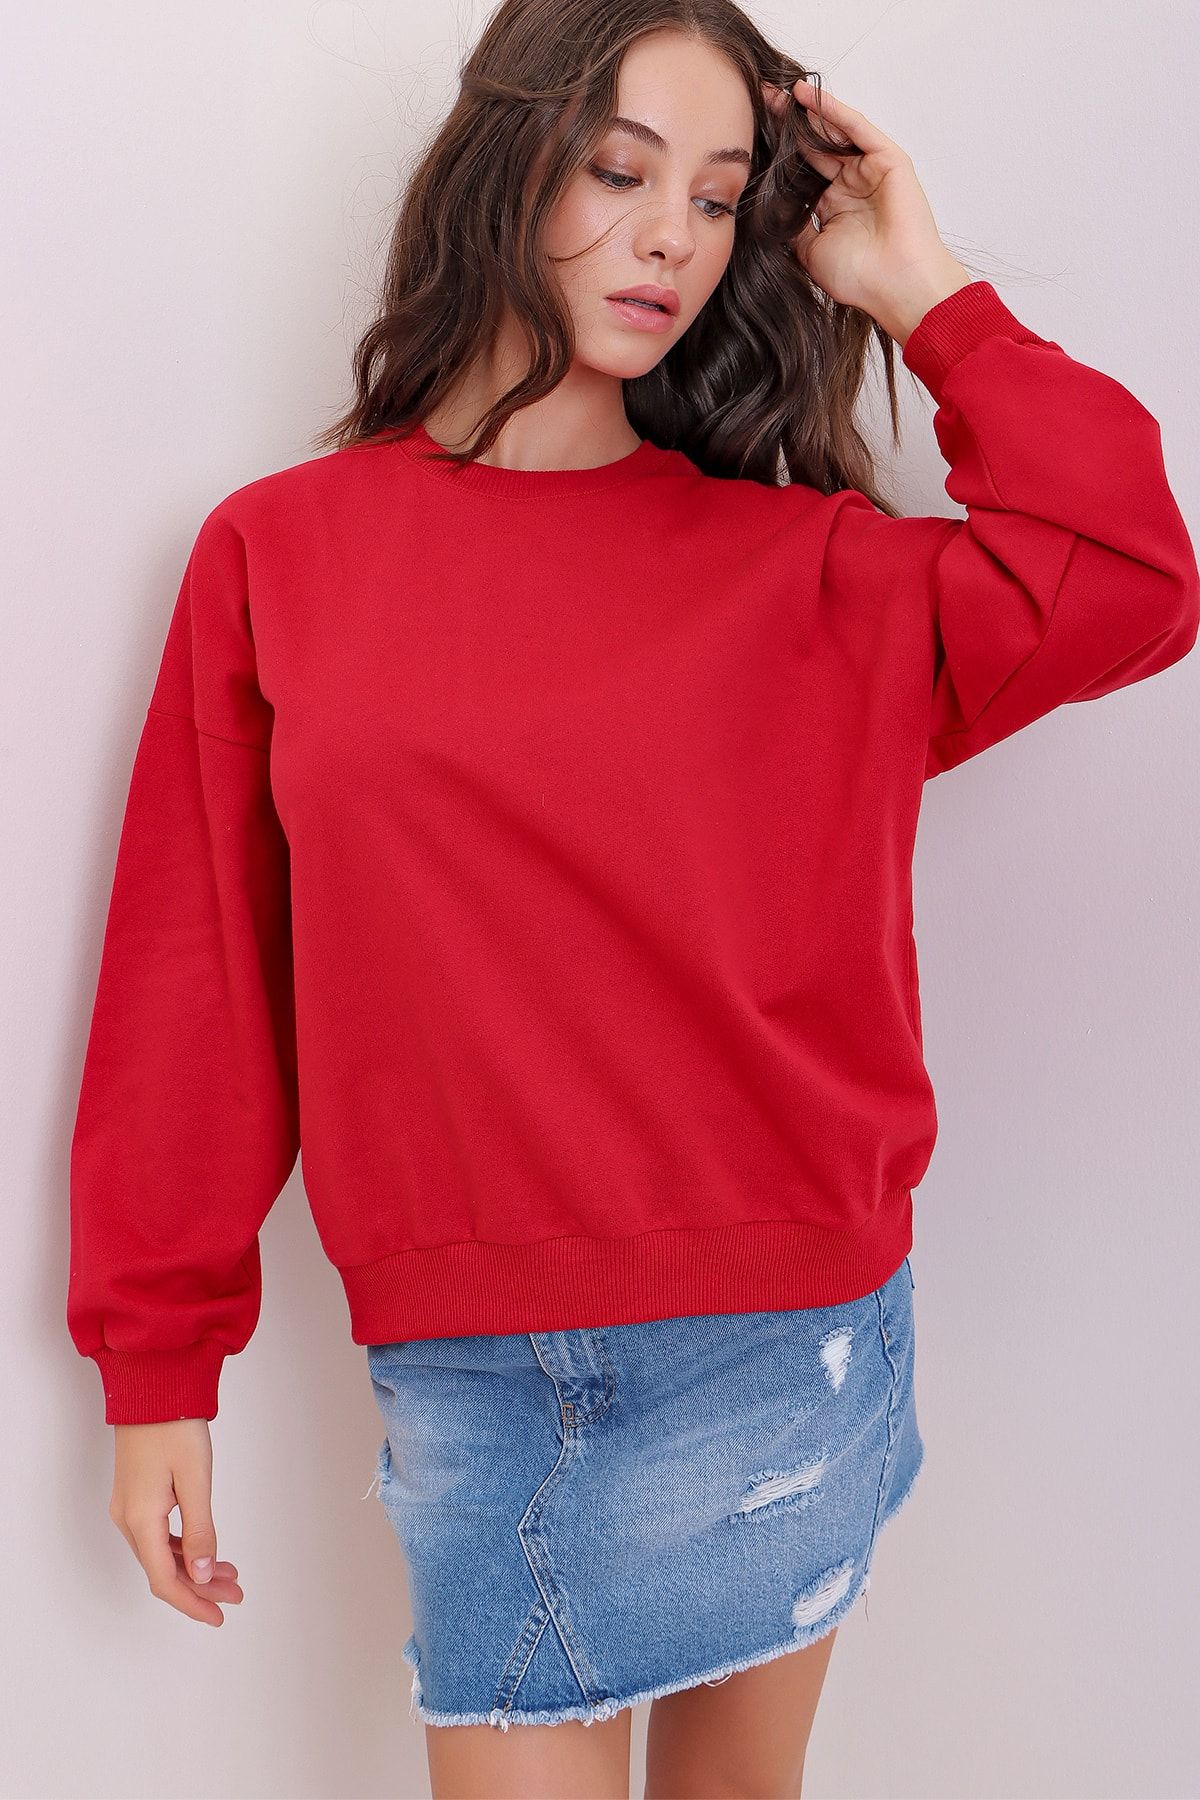 Trend Alaçatı Stili Kadın Kırmızı Bisiklet Yaka Oversize Basic Sweatshirt ALC-669-001